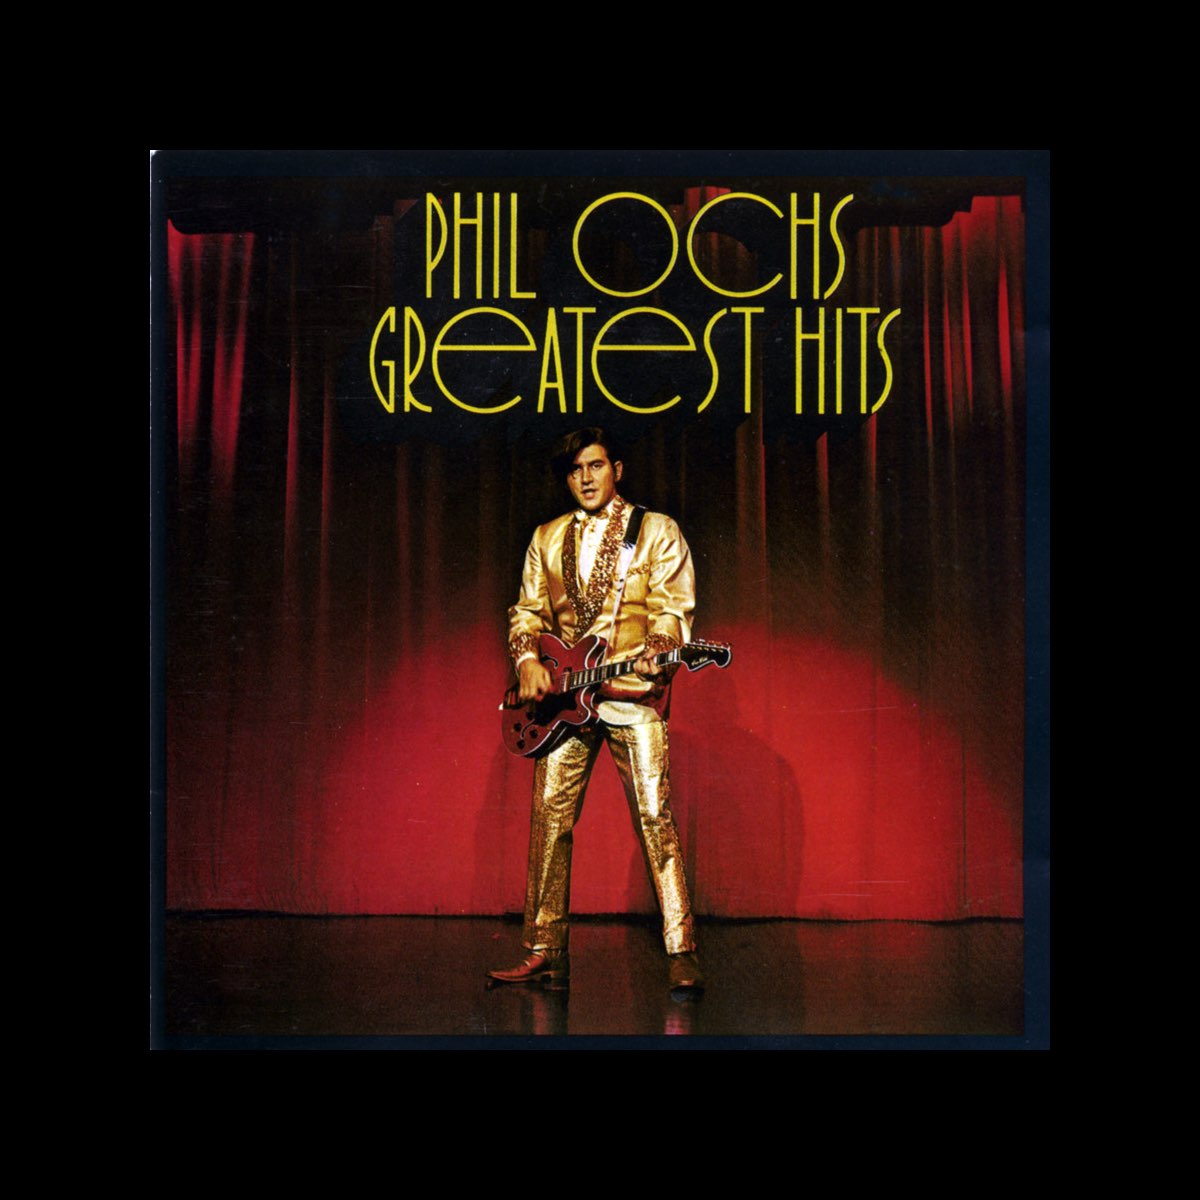 Phil Ochs - Greatest Hits par Phil Ochs sur Apple Music